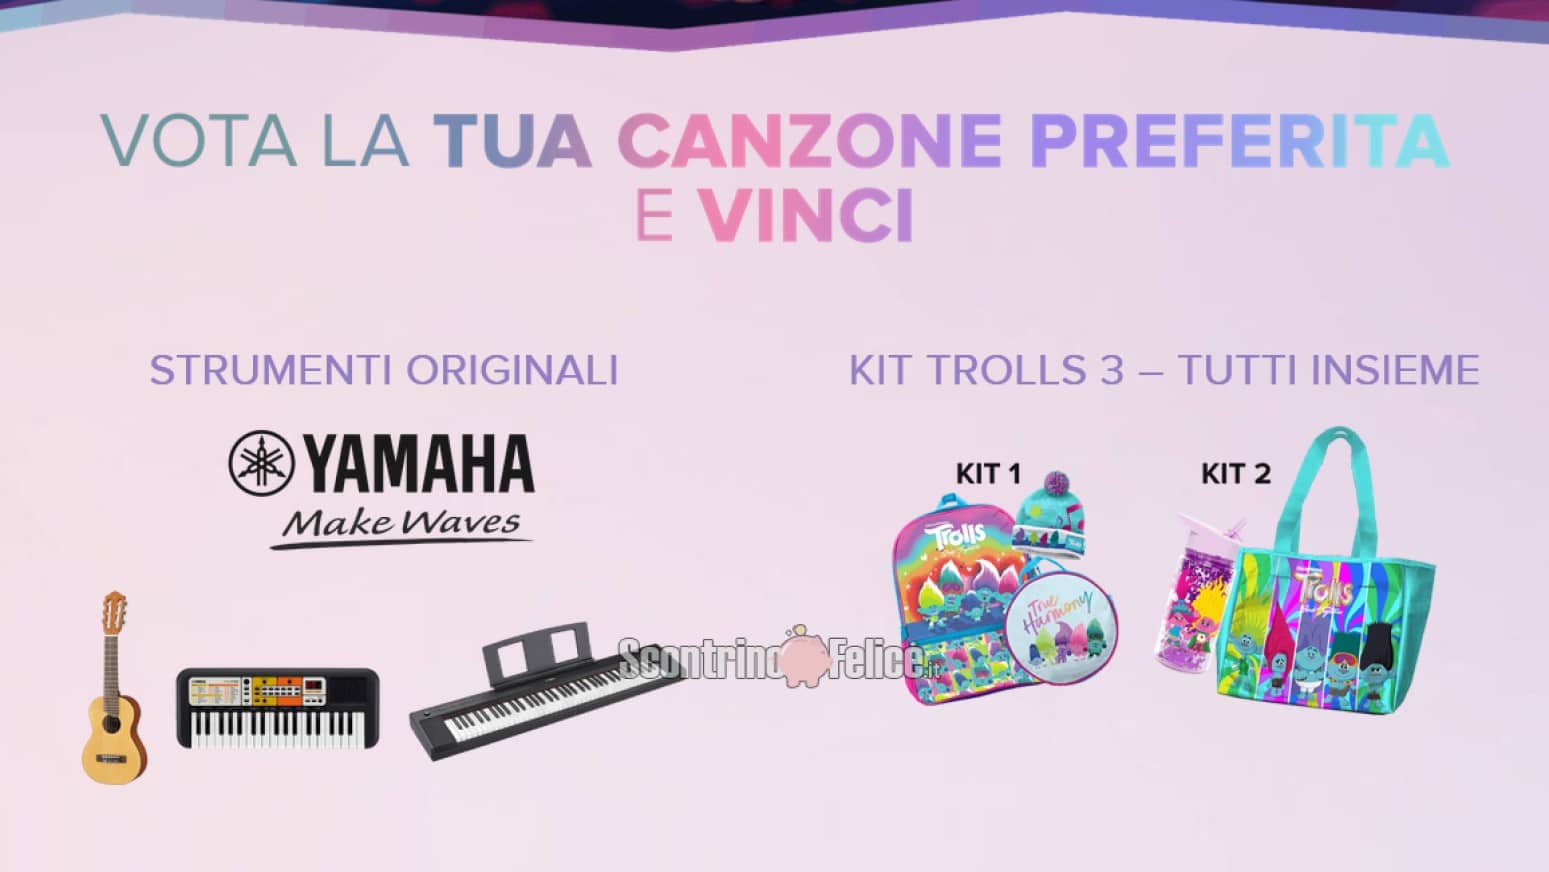 Concorso gratuito Yamaha: vota la tua canzone preferita e vinci Trolls 3